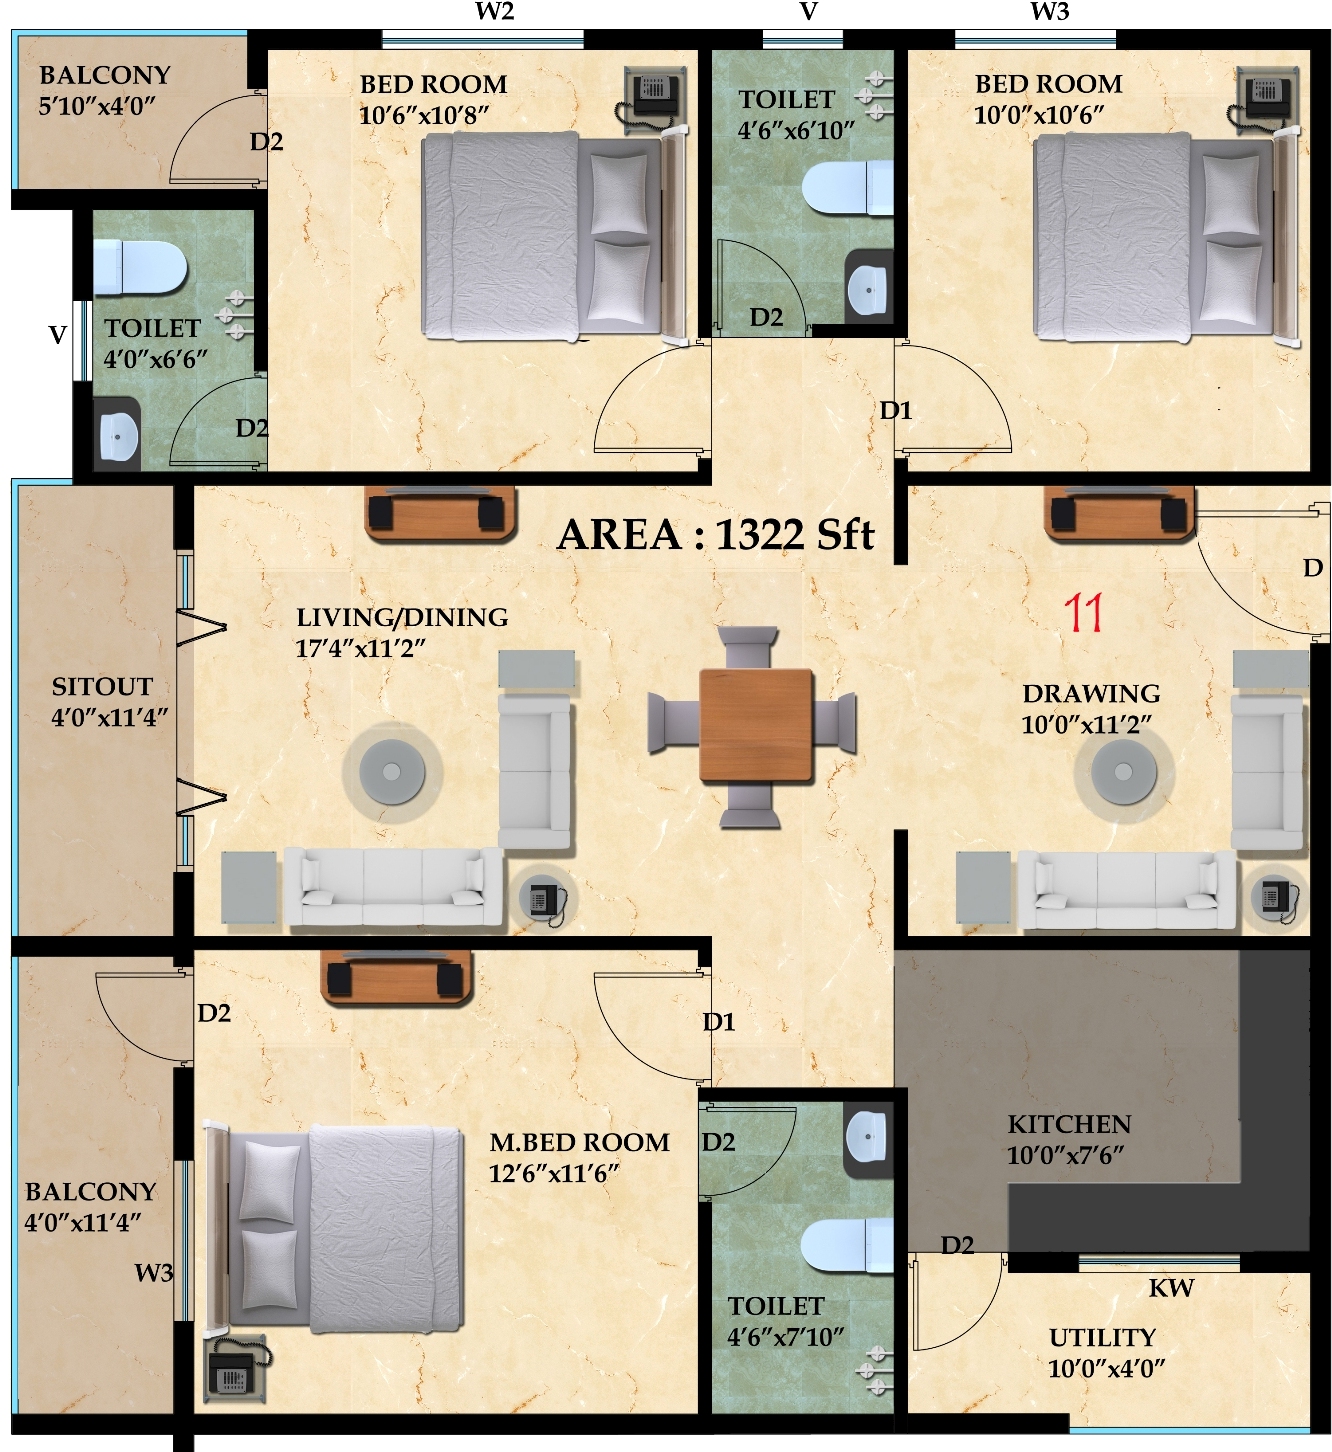 3 Bedroom Apartment Interior Design India